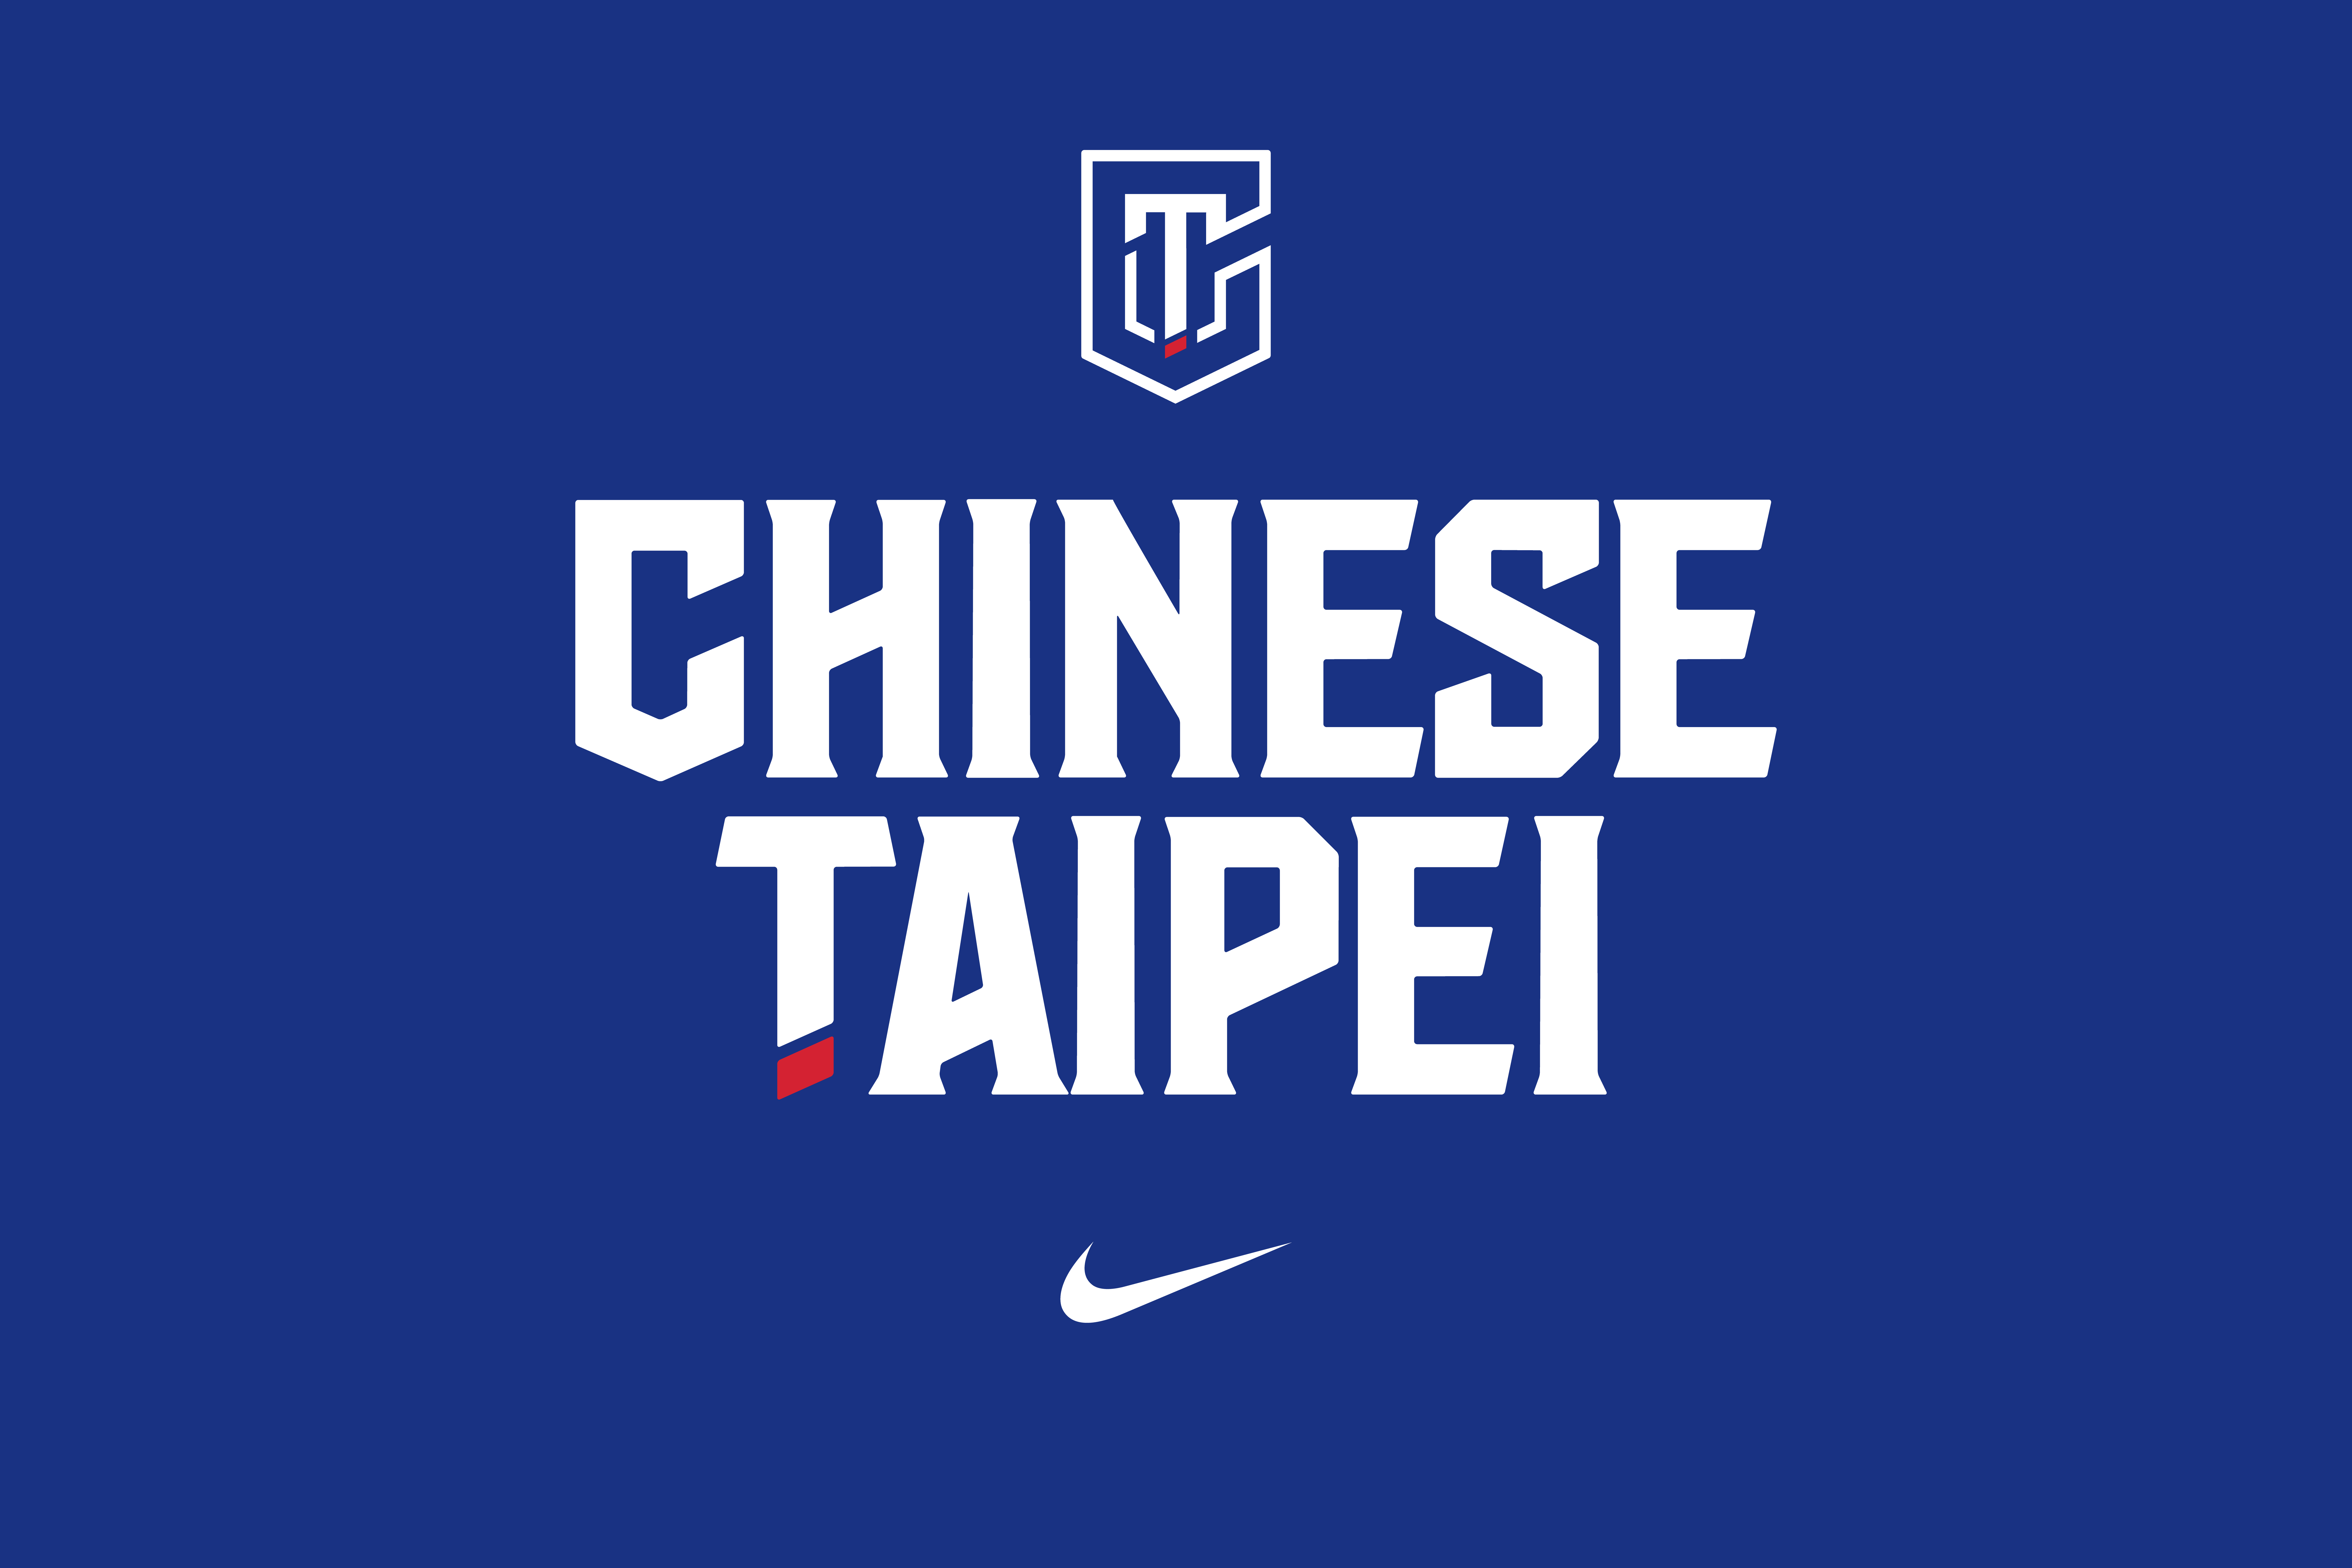 Nike與中華籃協共同發表全新 Chinese Taipei 隊徽及系列裝備 助力中華隊征戰國際賽事